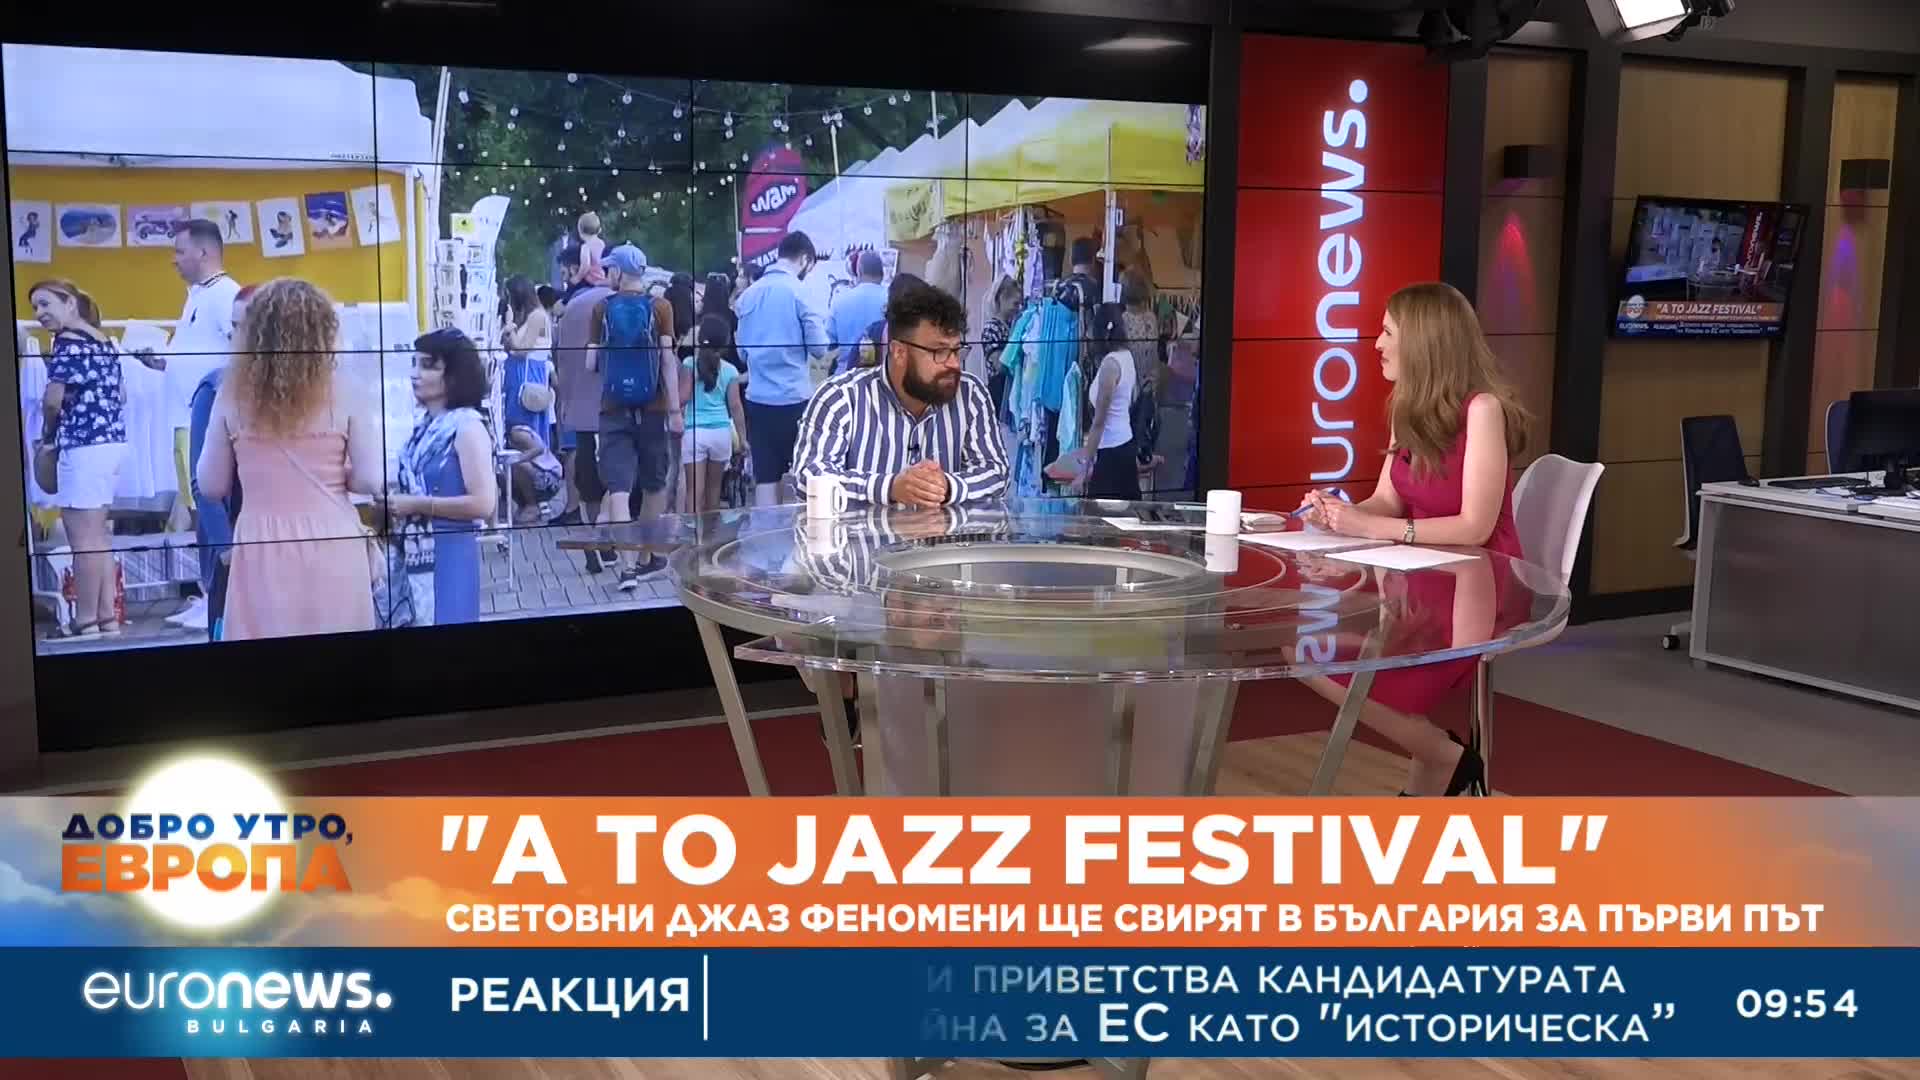 „A to Jazz Festival“: Световни джаз феномени ще свирят в България за първи път